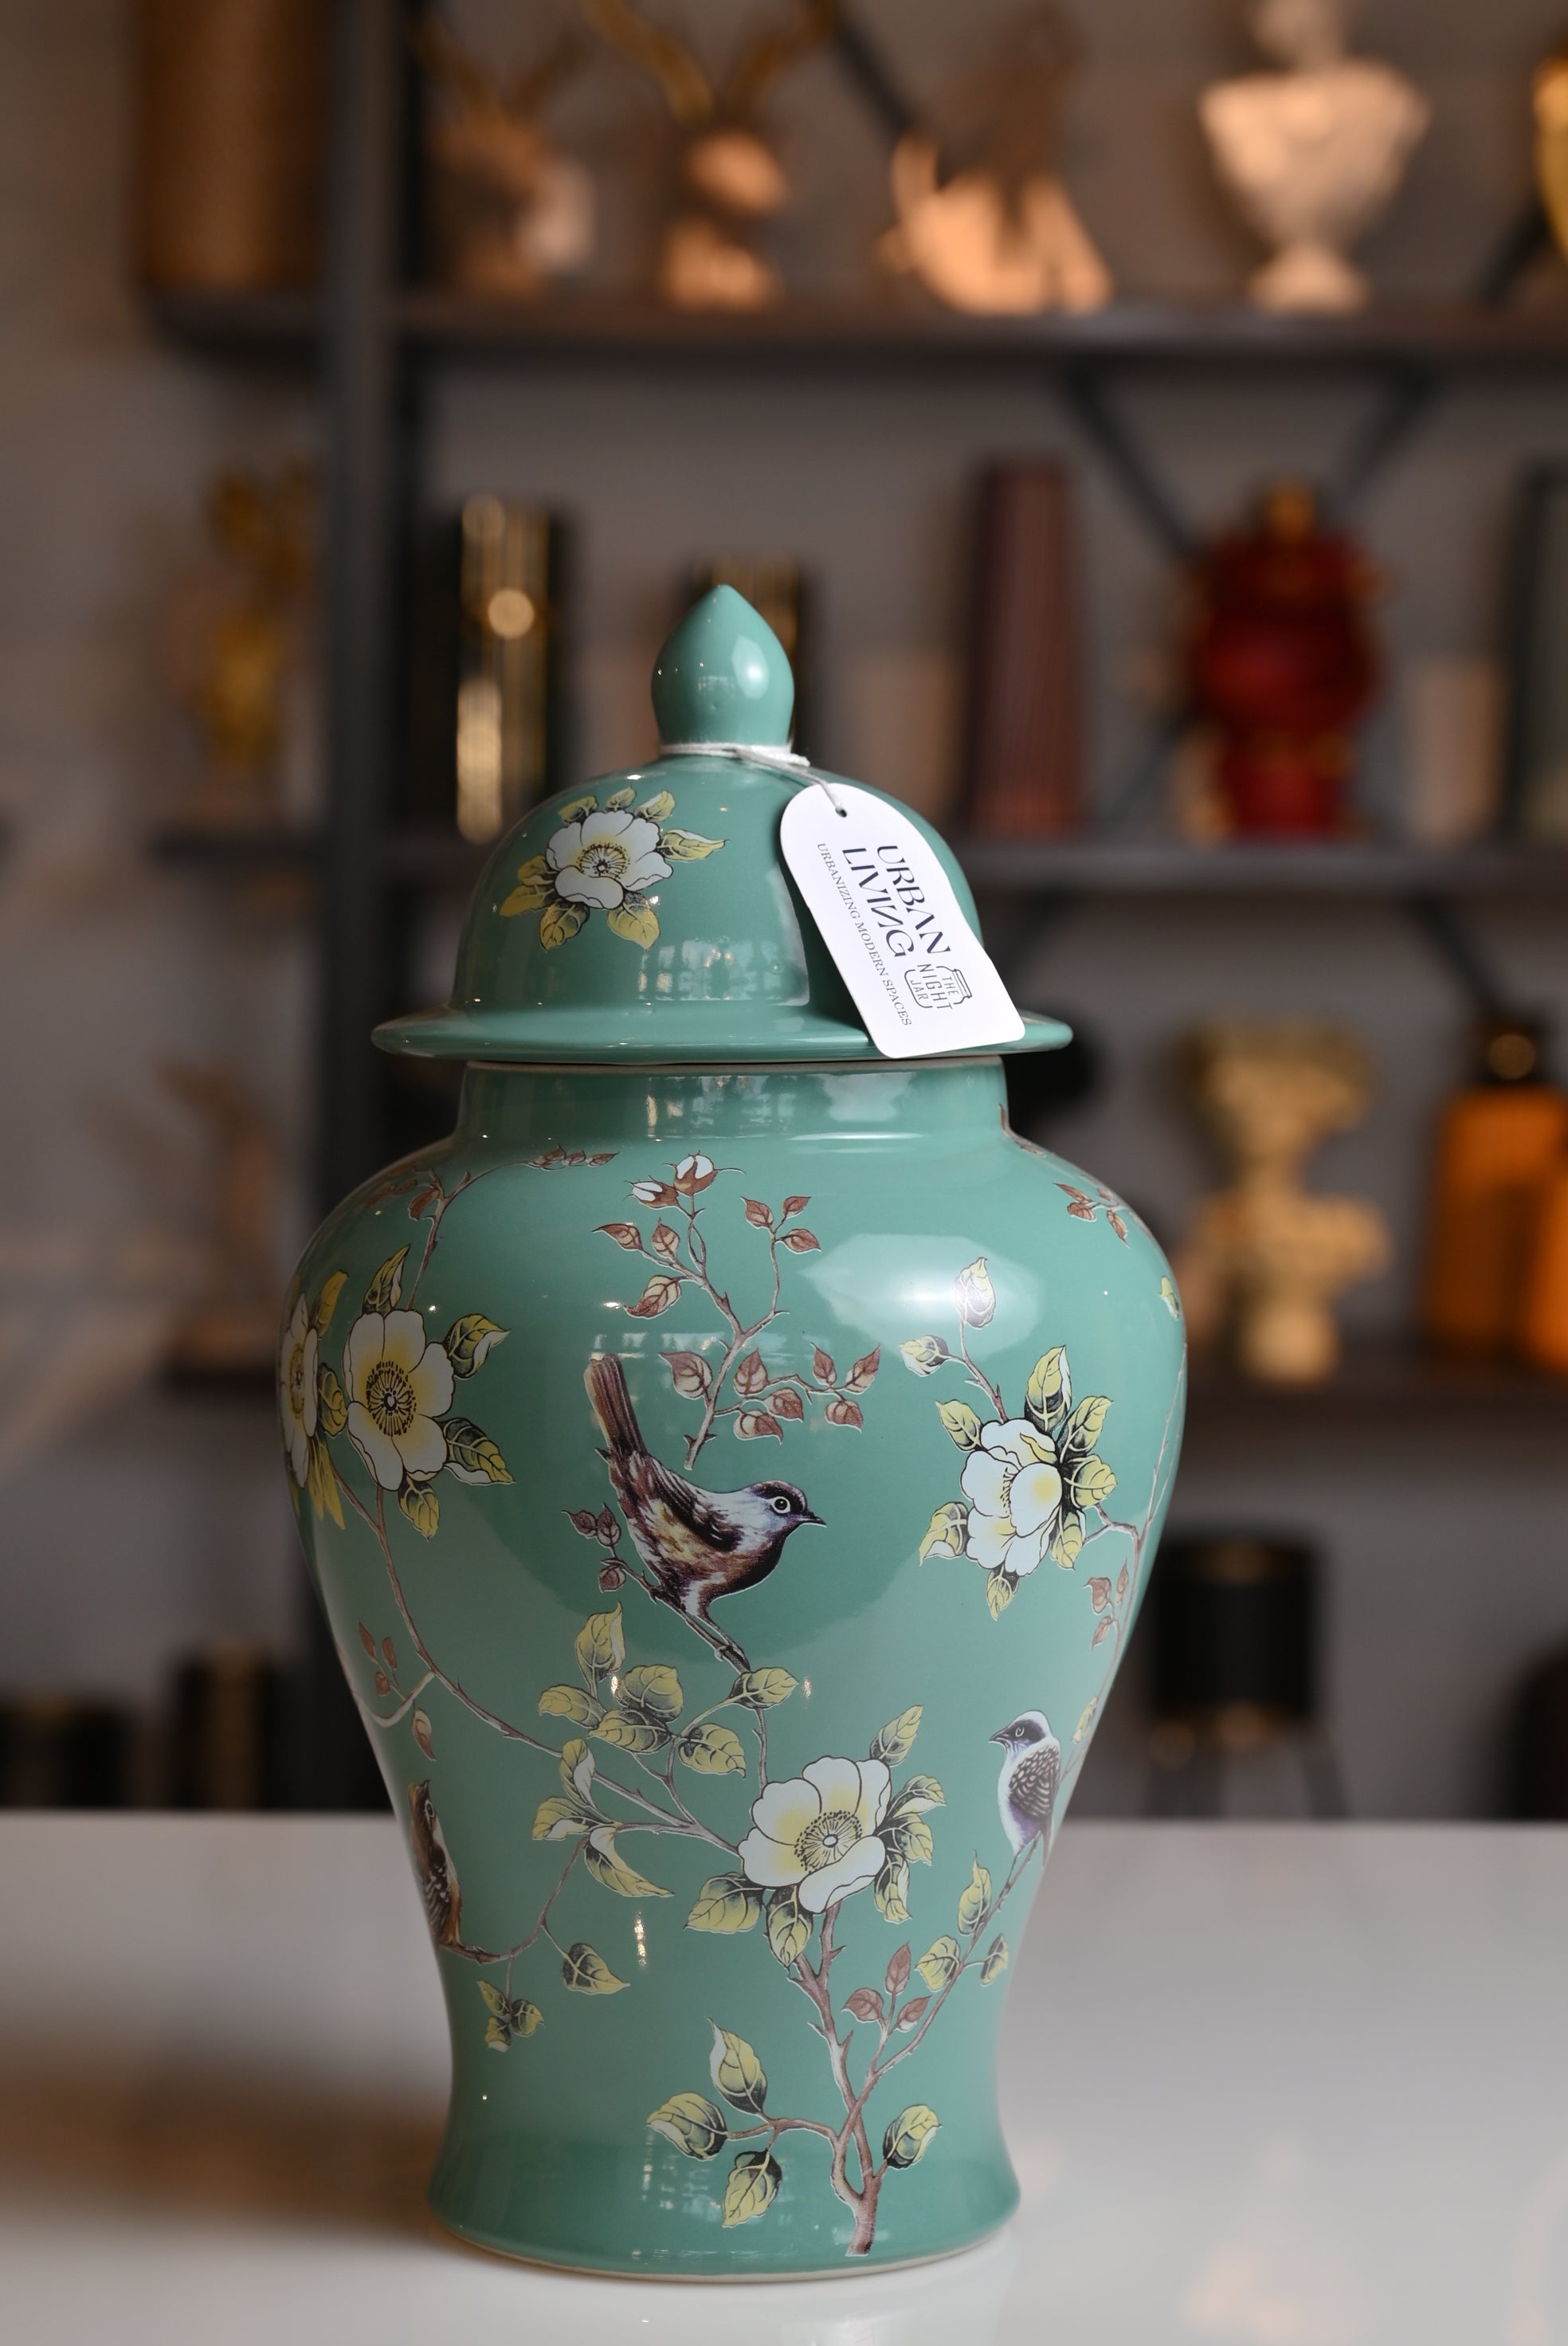 The Royal Ceramic Vase